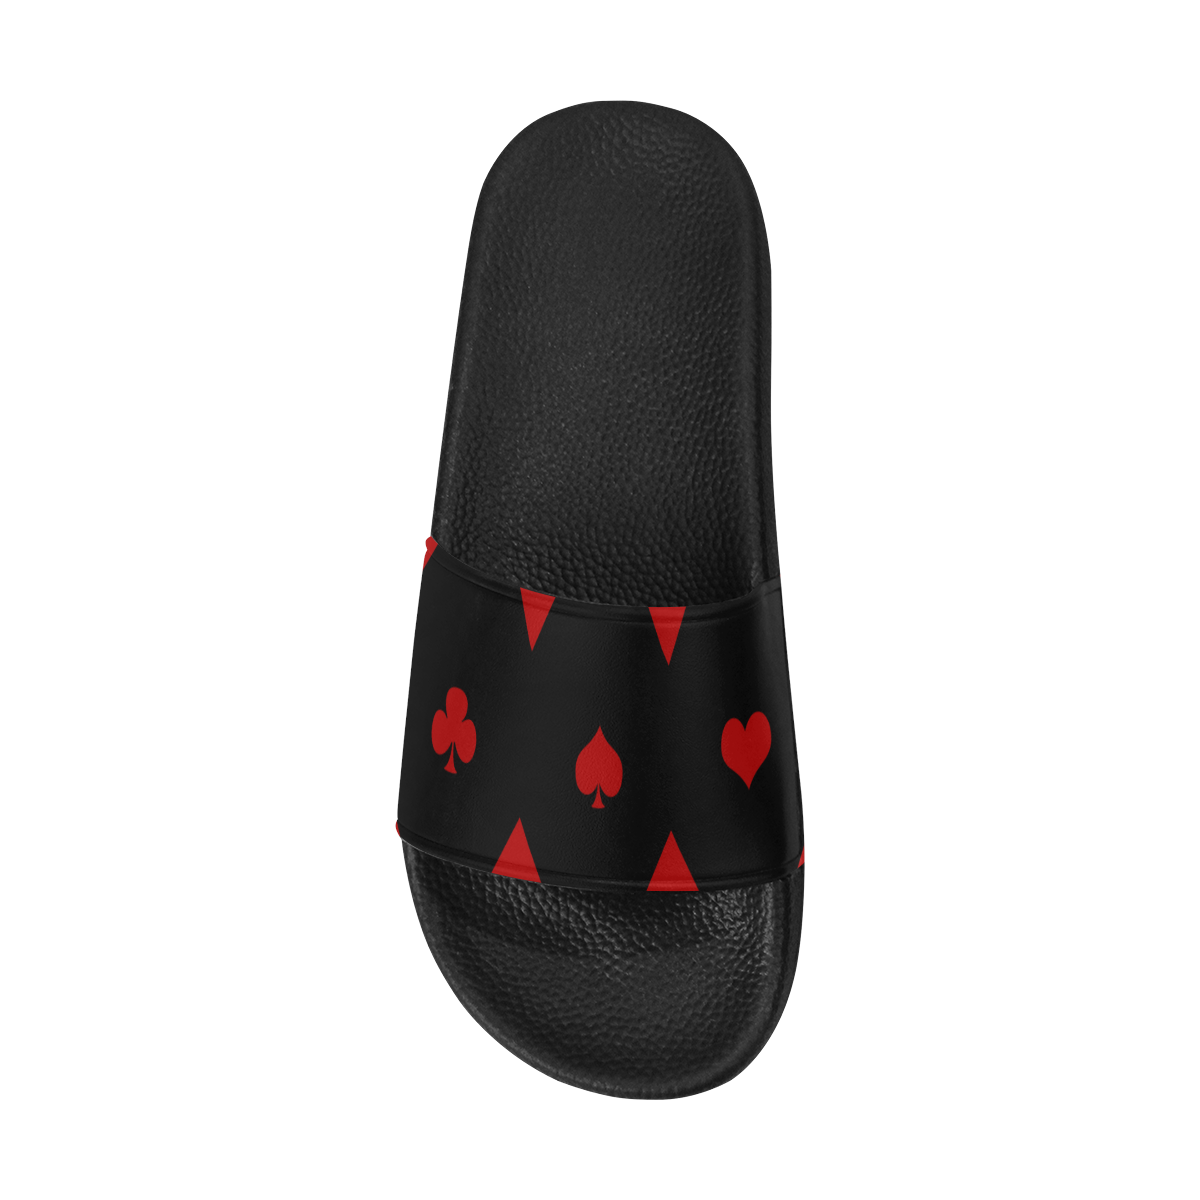 Las Vegas Black Red Play Card Shapes Men's Slide Sandals (Model 057)